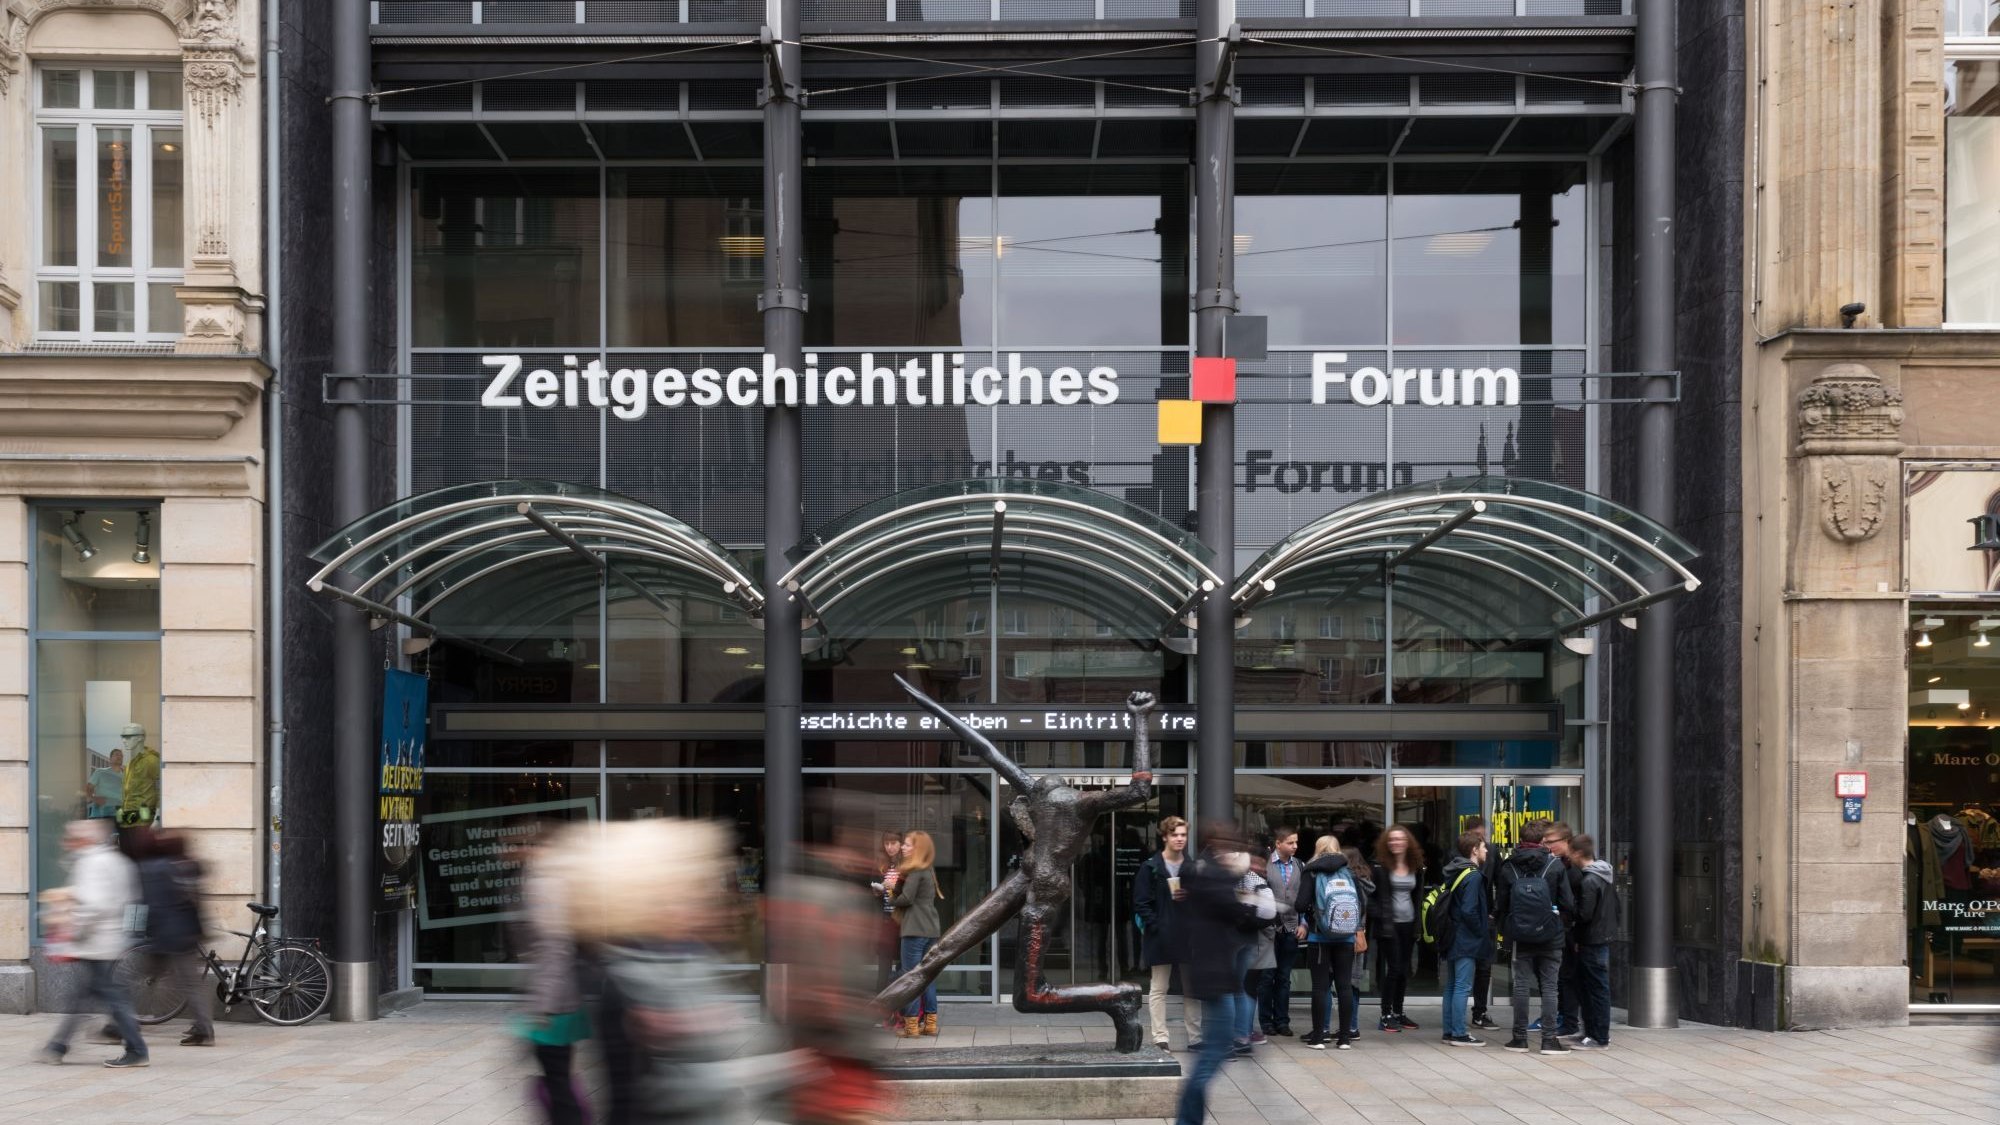 Eingang des Zeitgeschichtlichen Forums Leipzig tagsüber bei starkem Betrieb